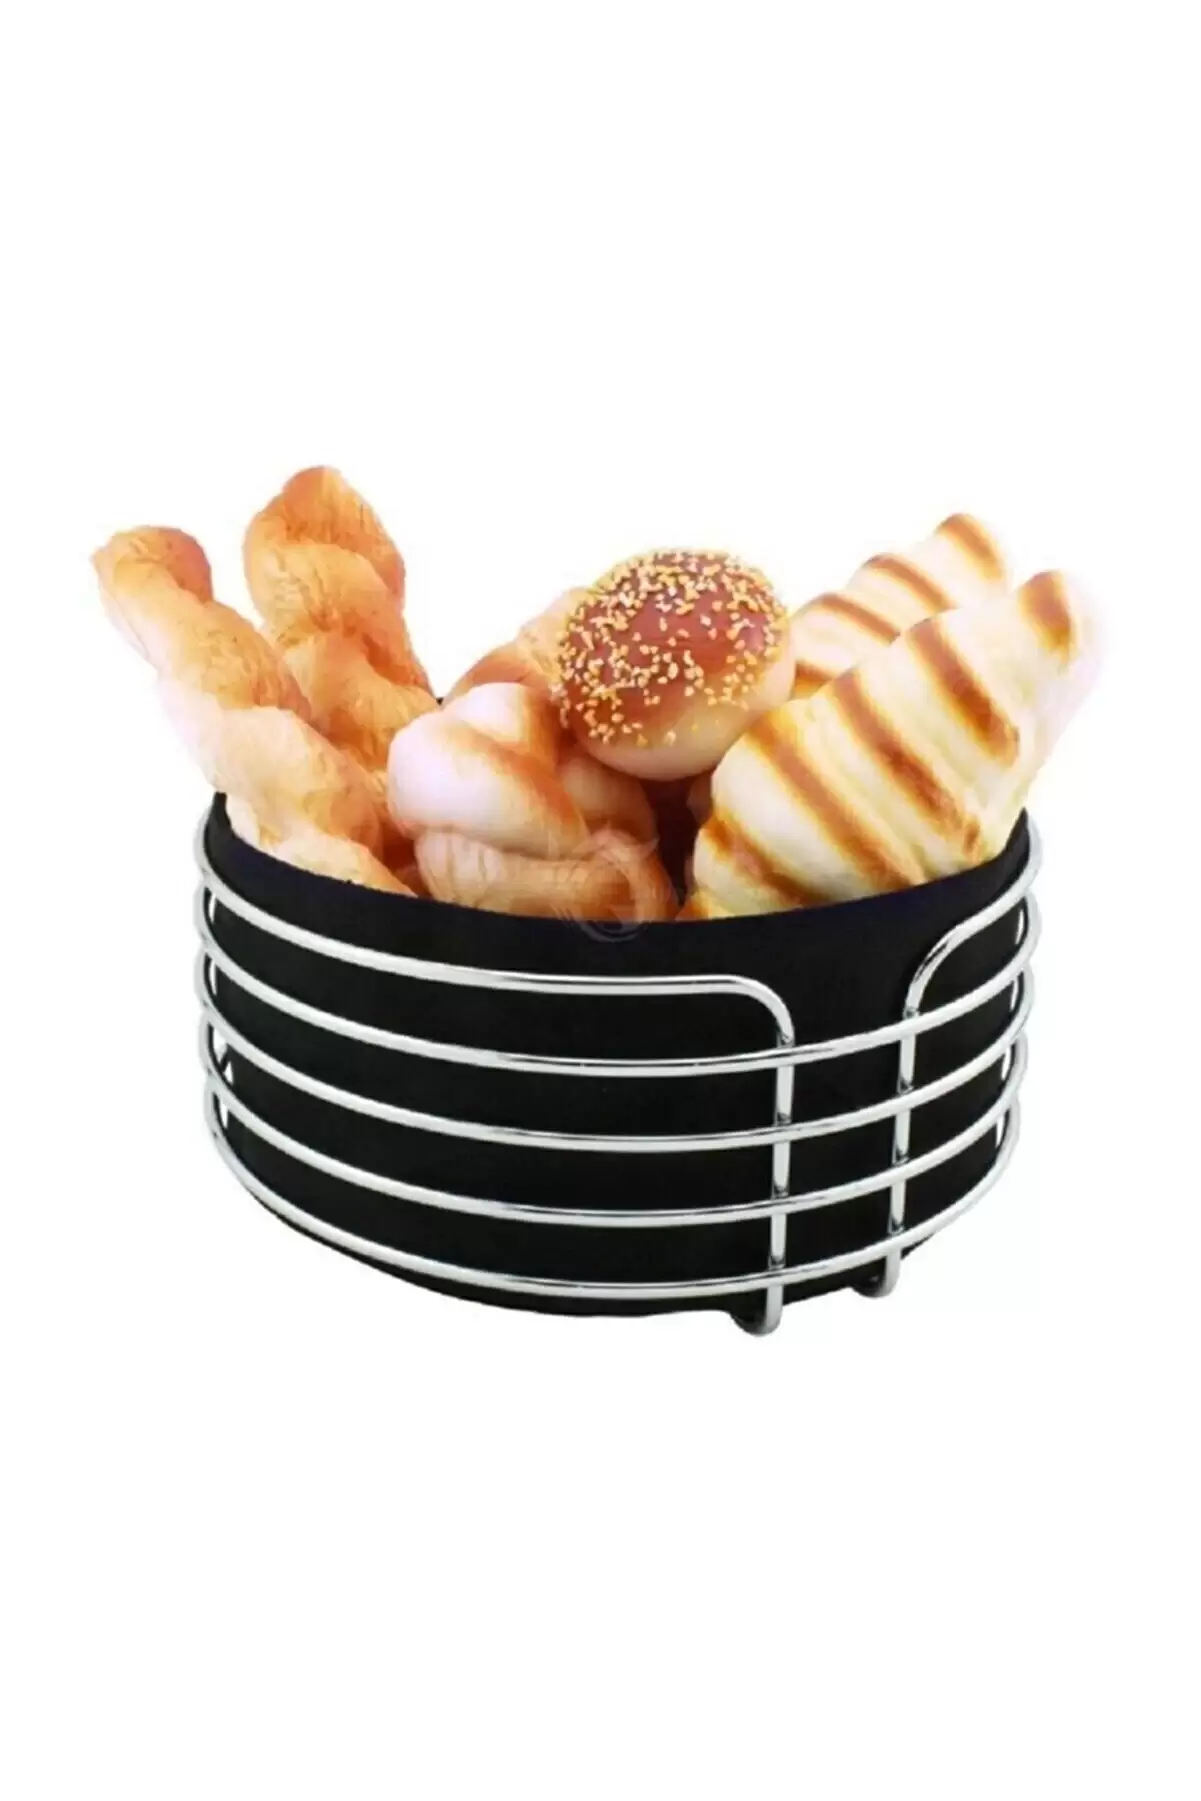 Metal Ekmeklik Paslanmaz Krom Şeritli Siyah Kumaş Yuvarlak Ekmeklik Ekmek Sepeti